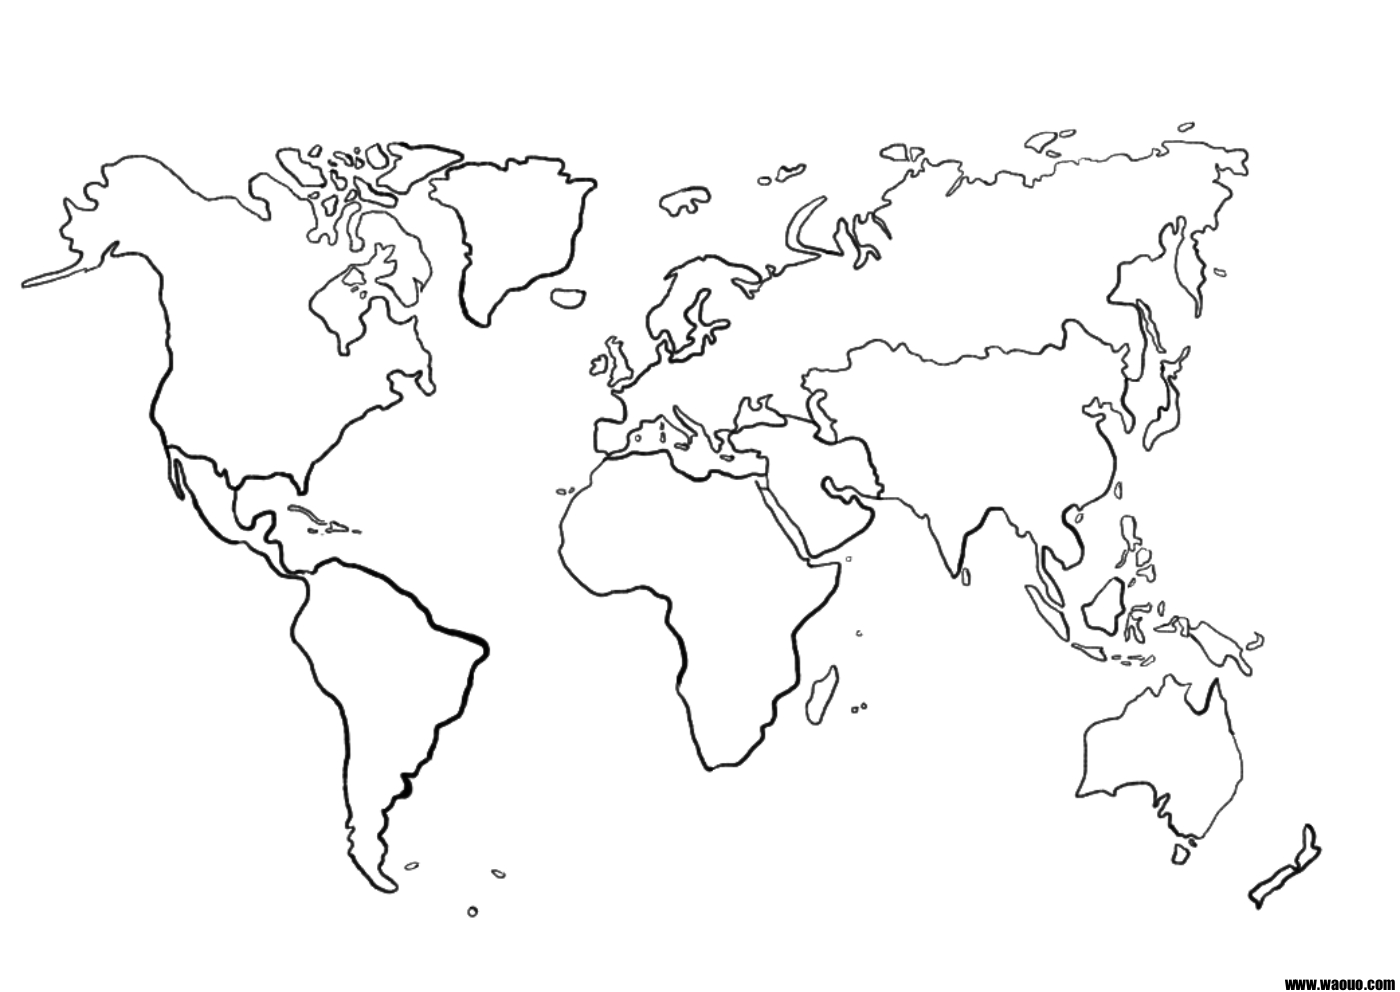 Une carte du monde (mappemonde) vierge pour la géographie à imprimer